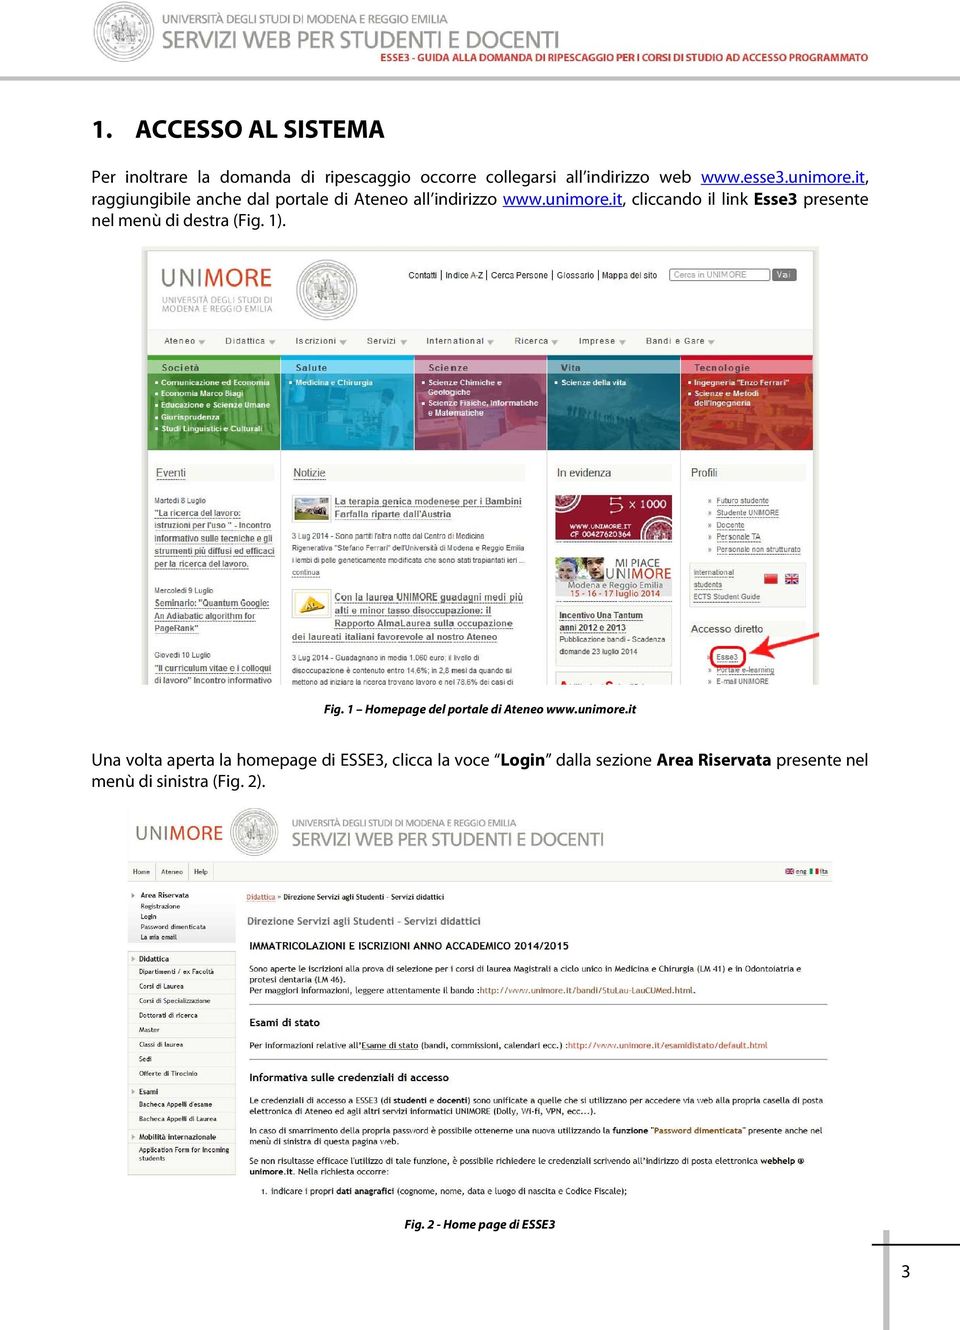 it, cliccando il link Esse3 presente nel menù di destra (Fig. 1). Fig. 1 Homepage del portale di Ateneo www.unimore.